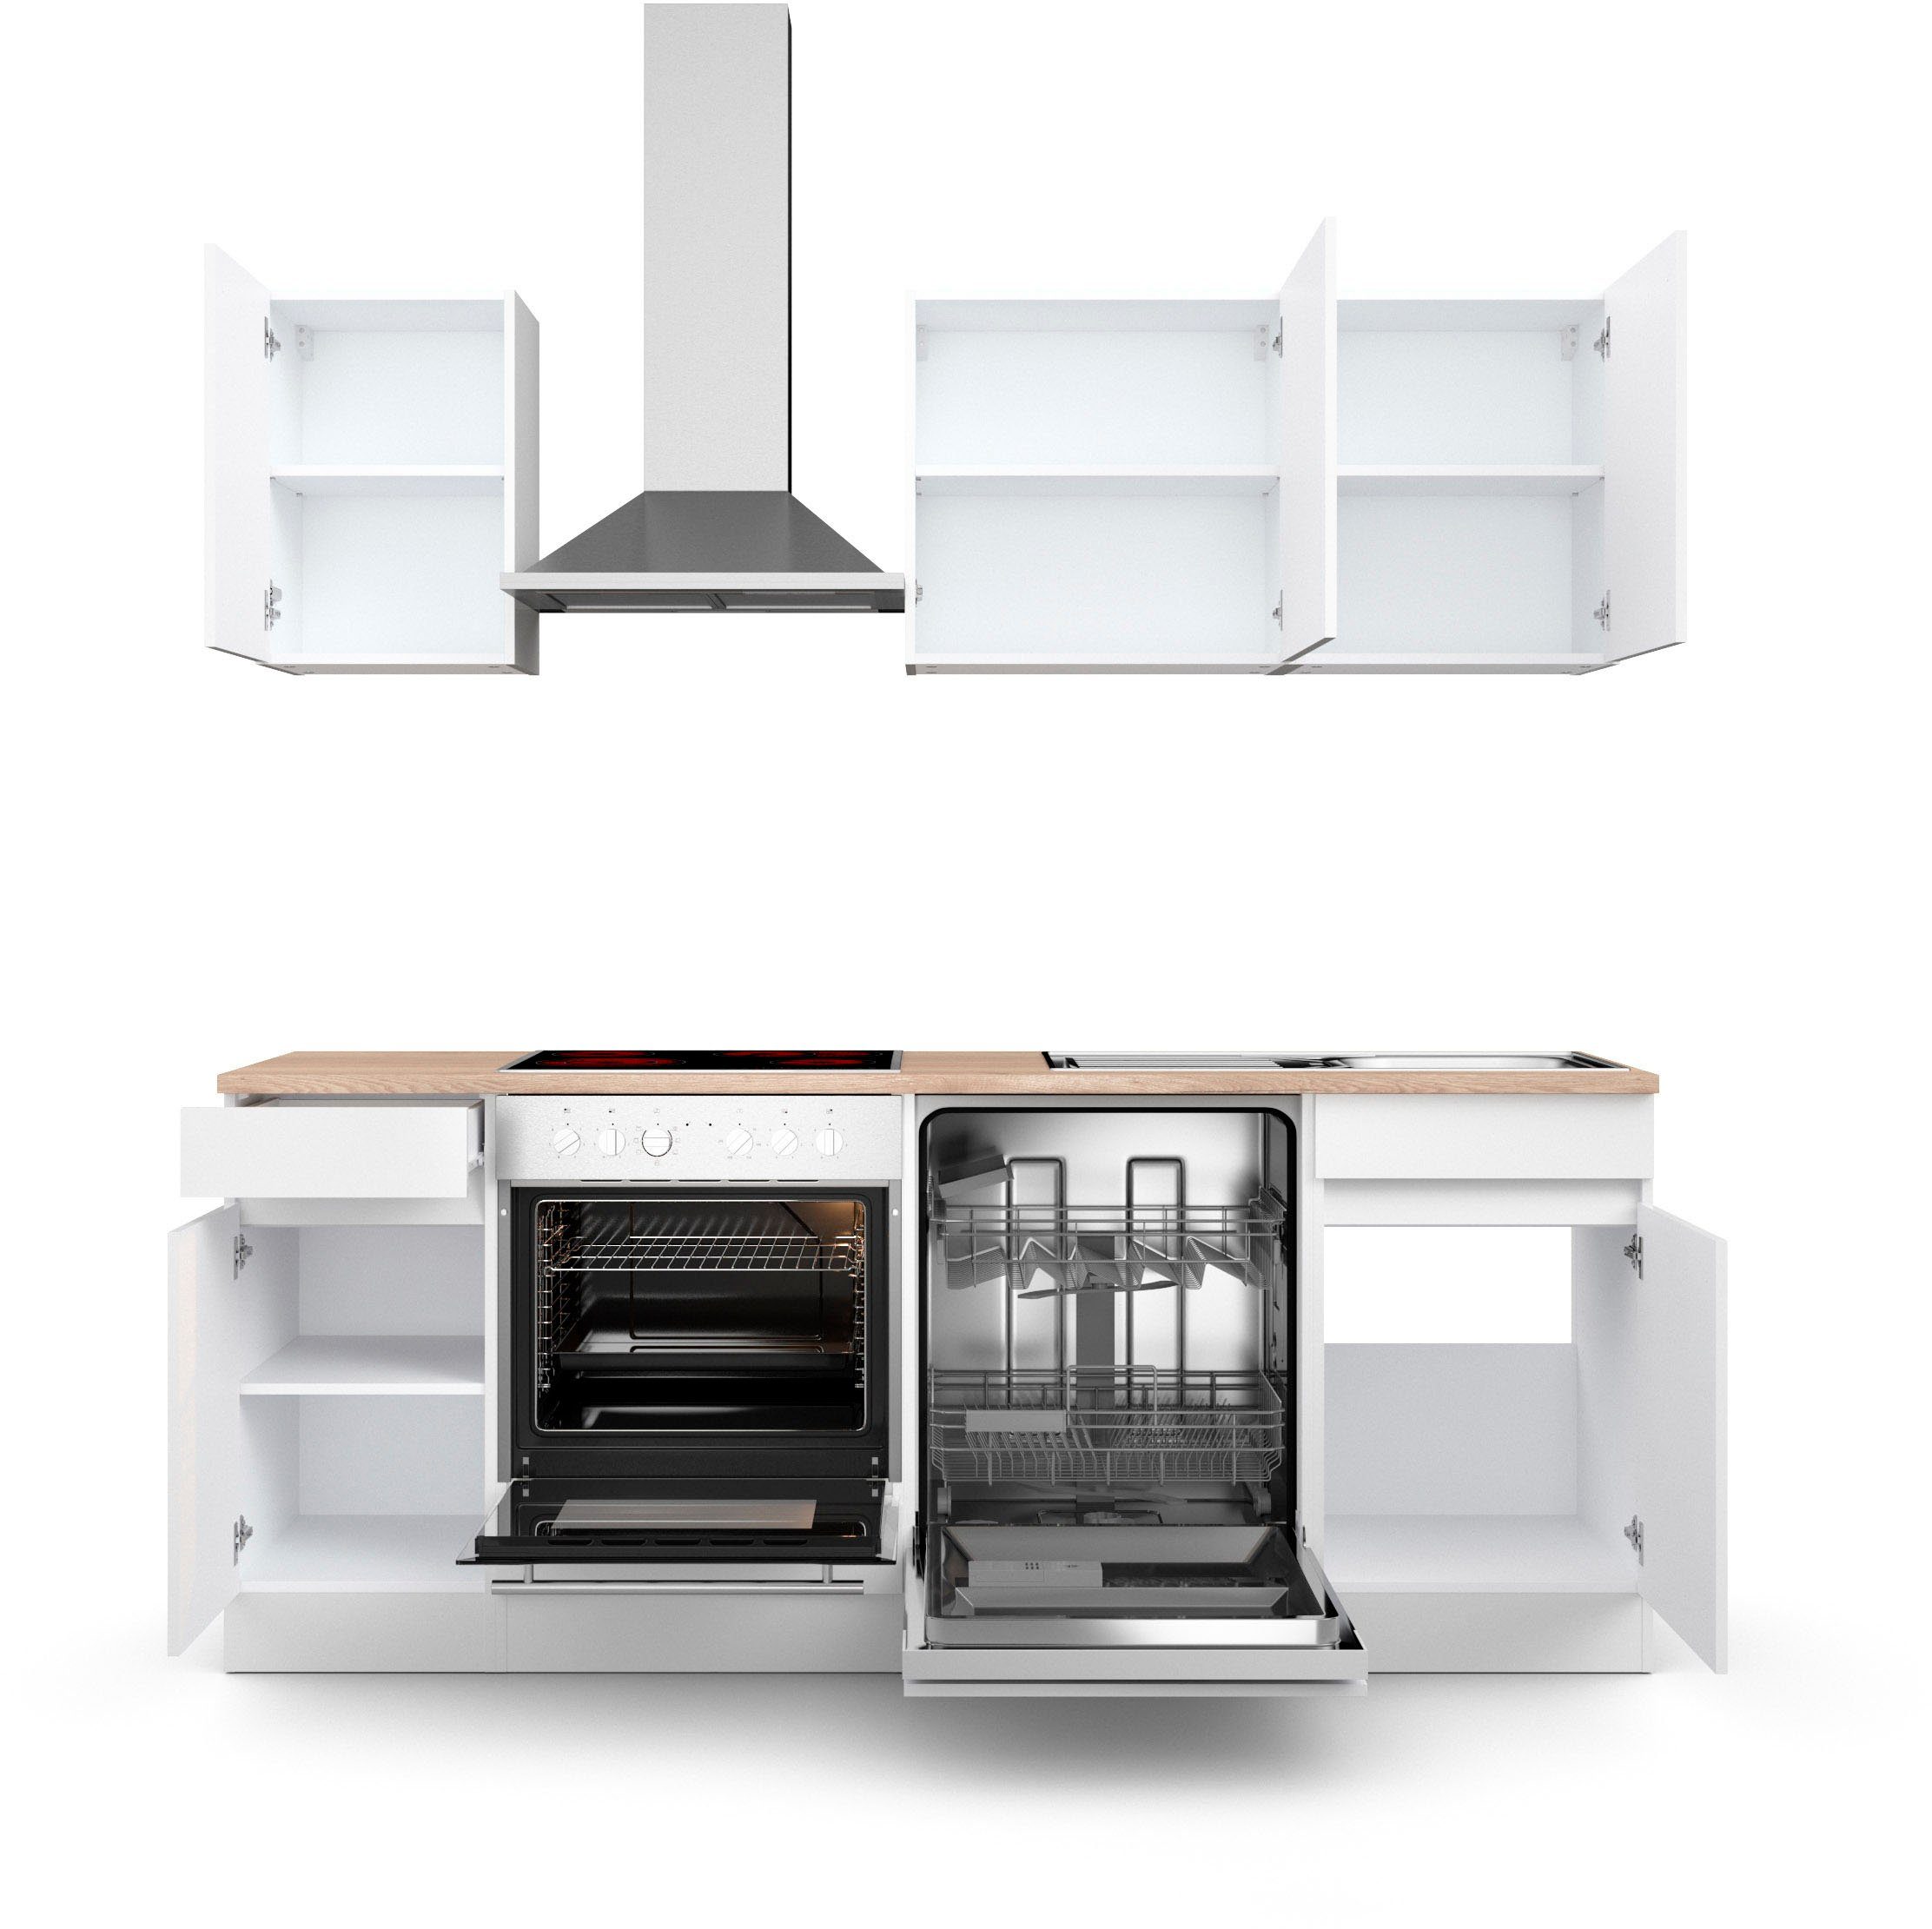 OPTIFIT Küche Safeli, Breite 210 cm, wahlweise mit oder ohne Hanseatic-E- Geräte, Oberschränke mit Push-to-open Funktion